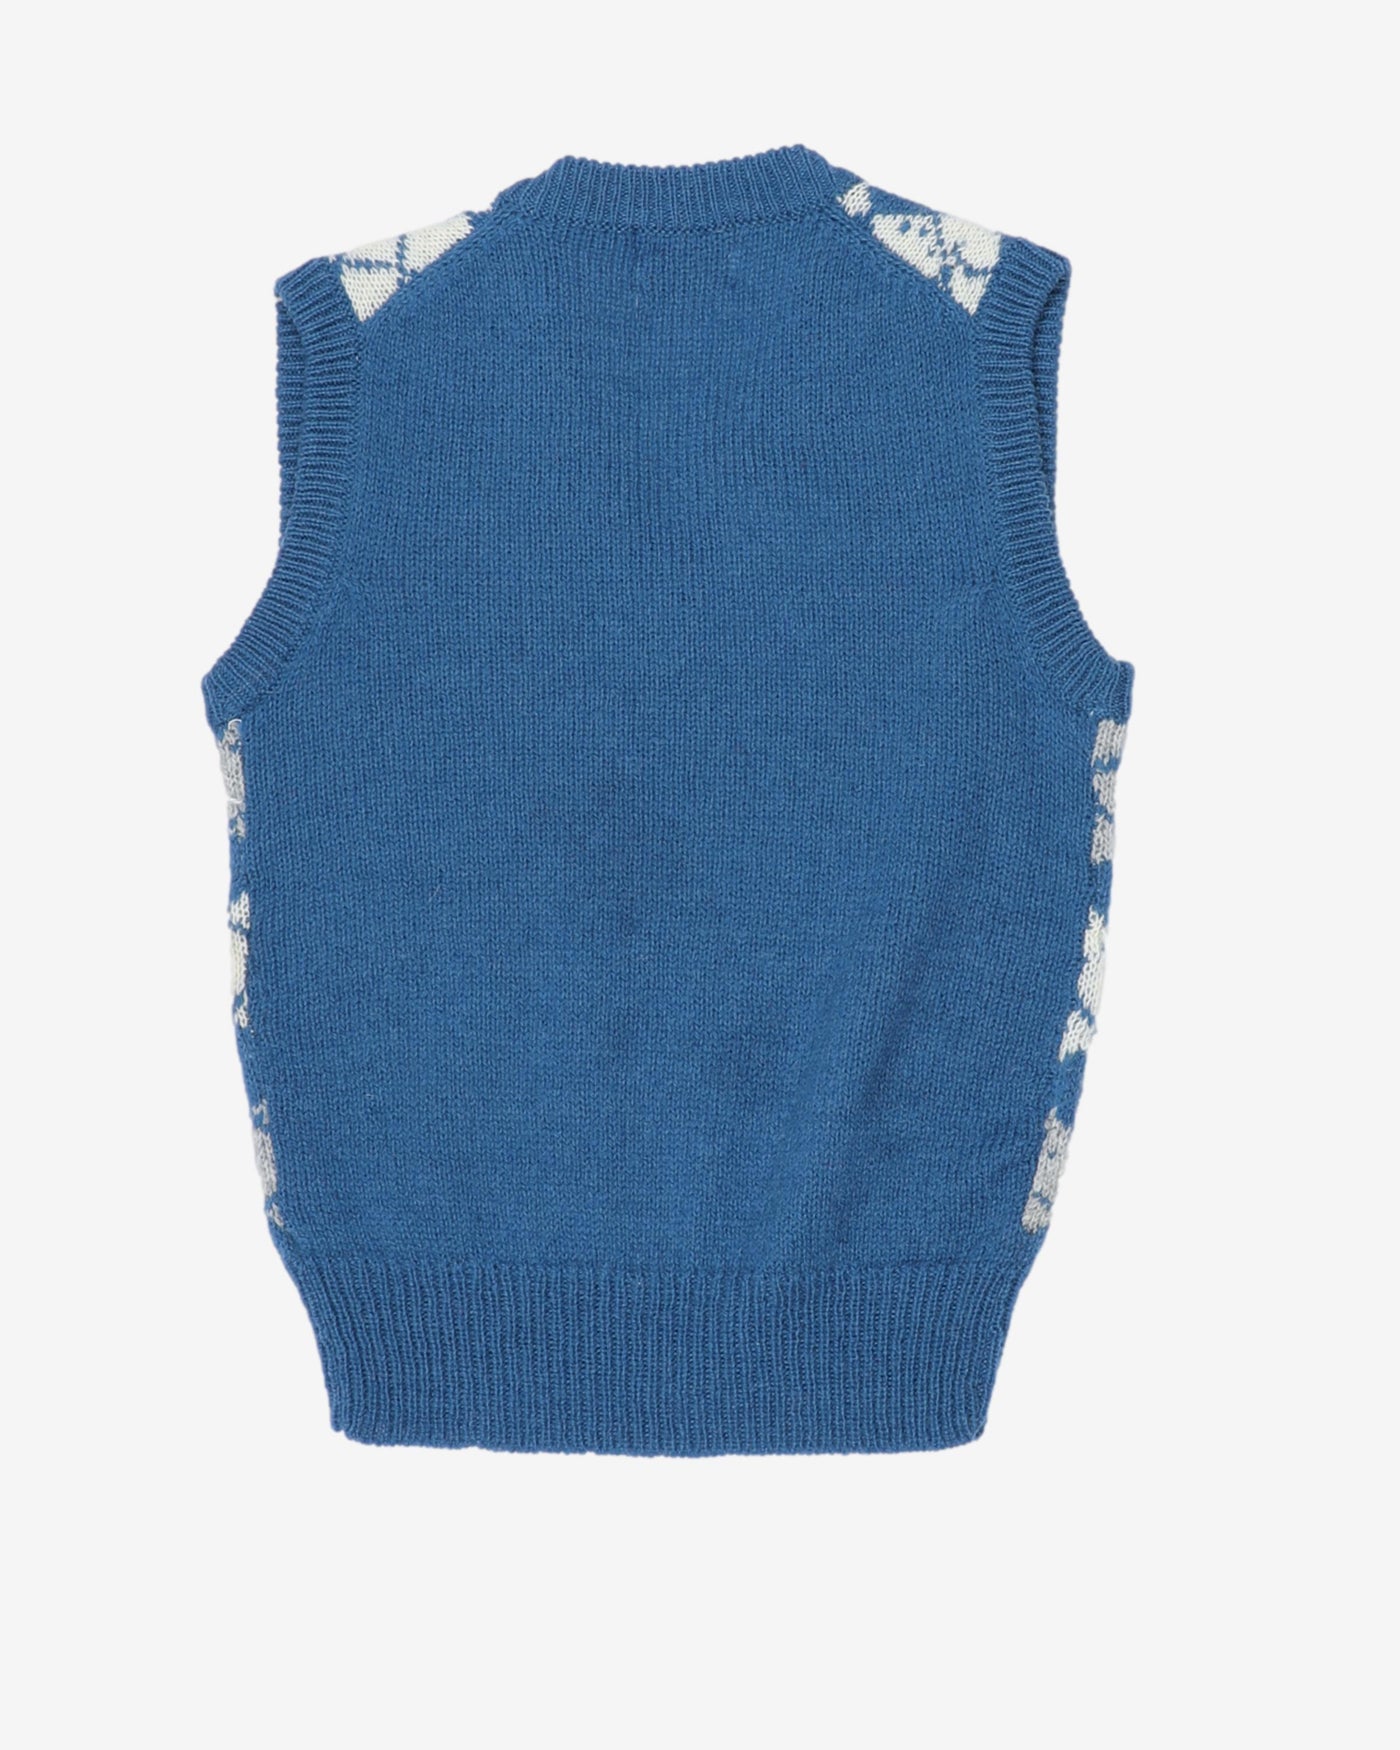 Nordstrom Blue Argyle Check Knit Vest Top - XS